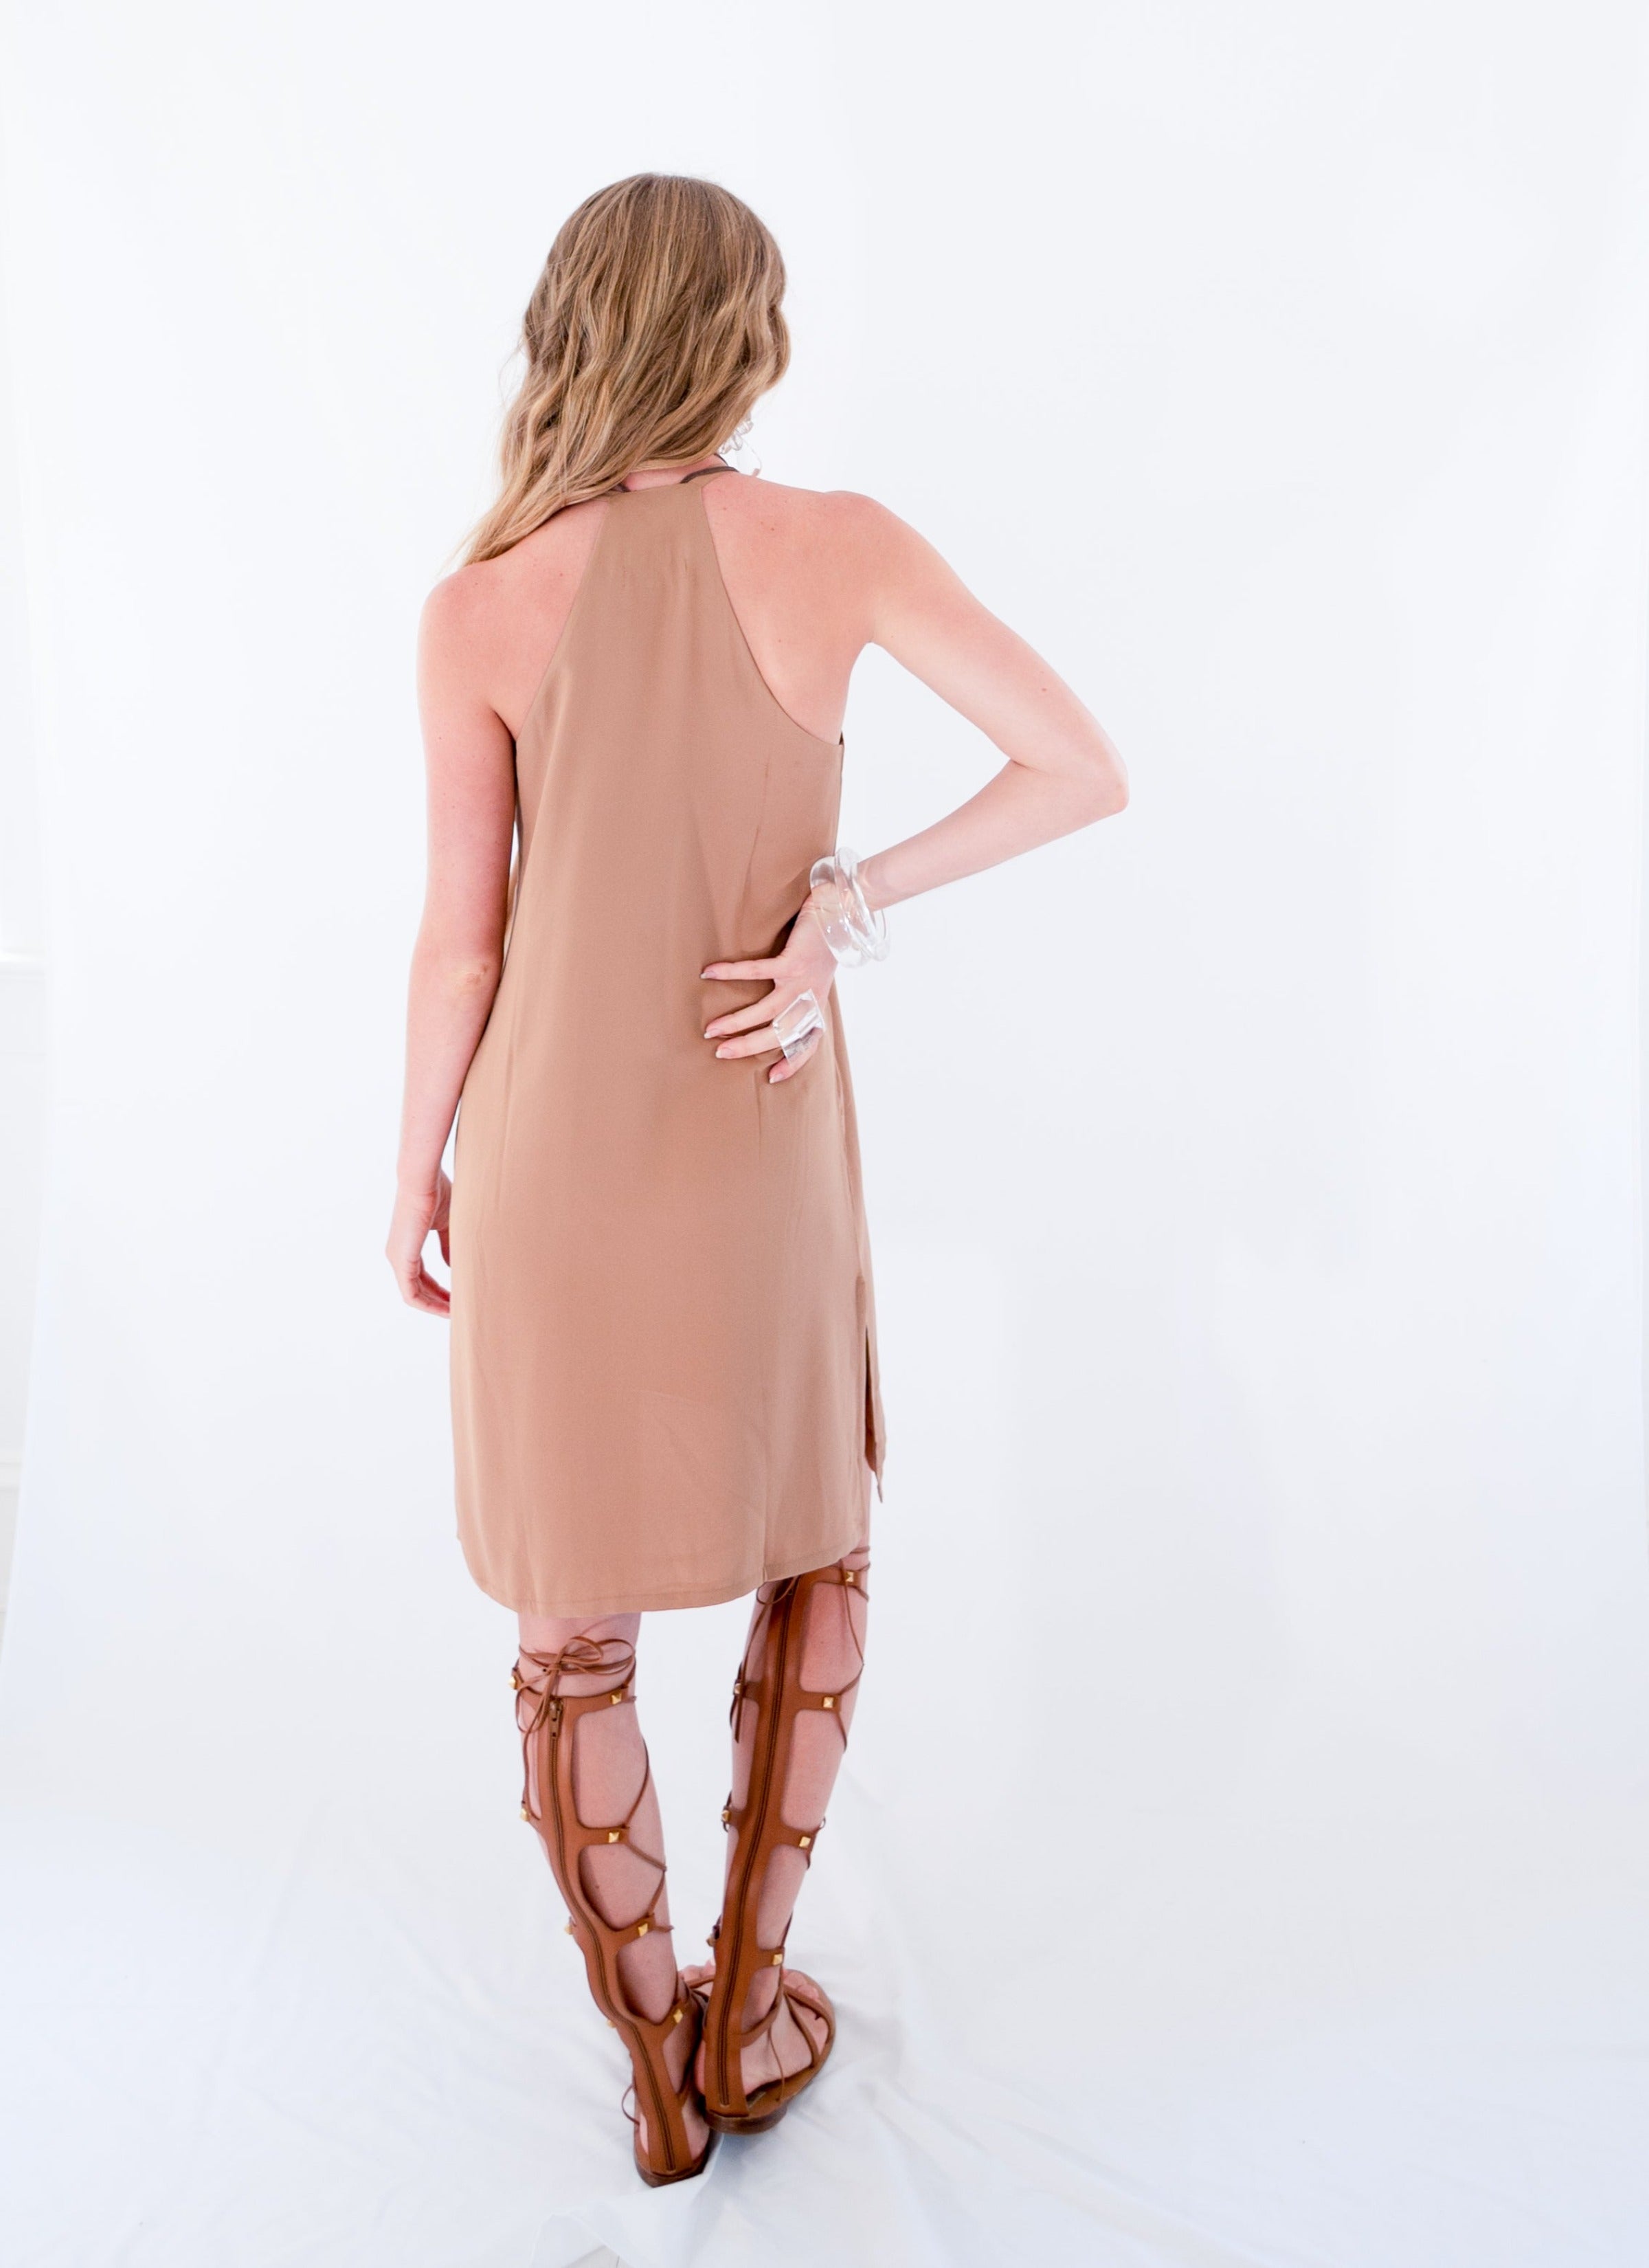 The Slip dress in Brown